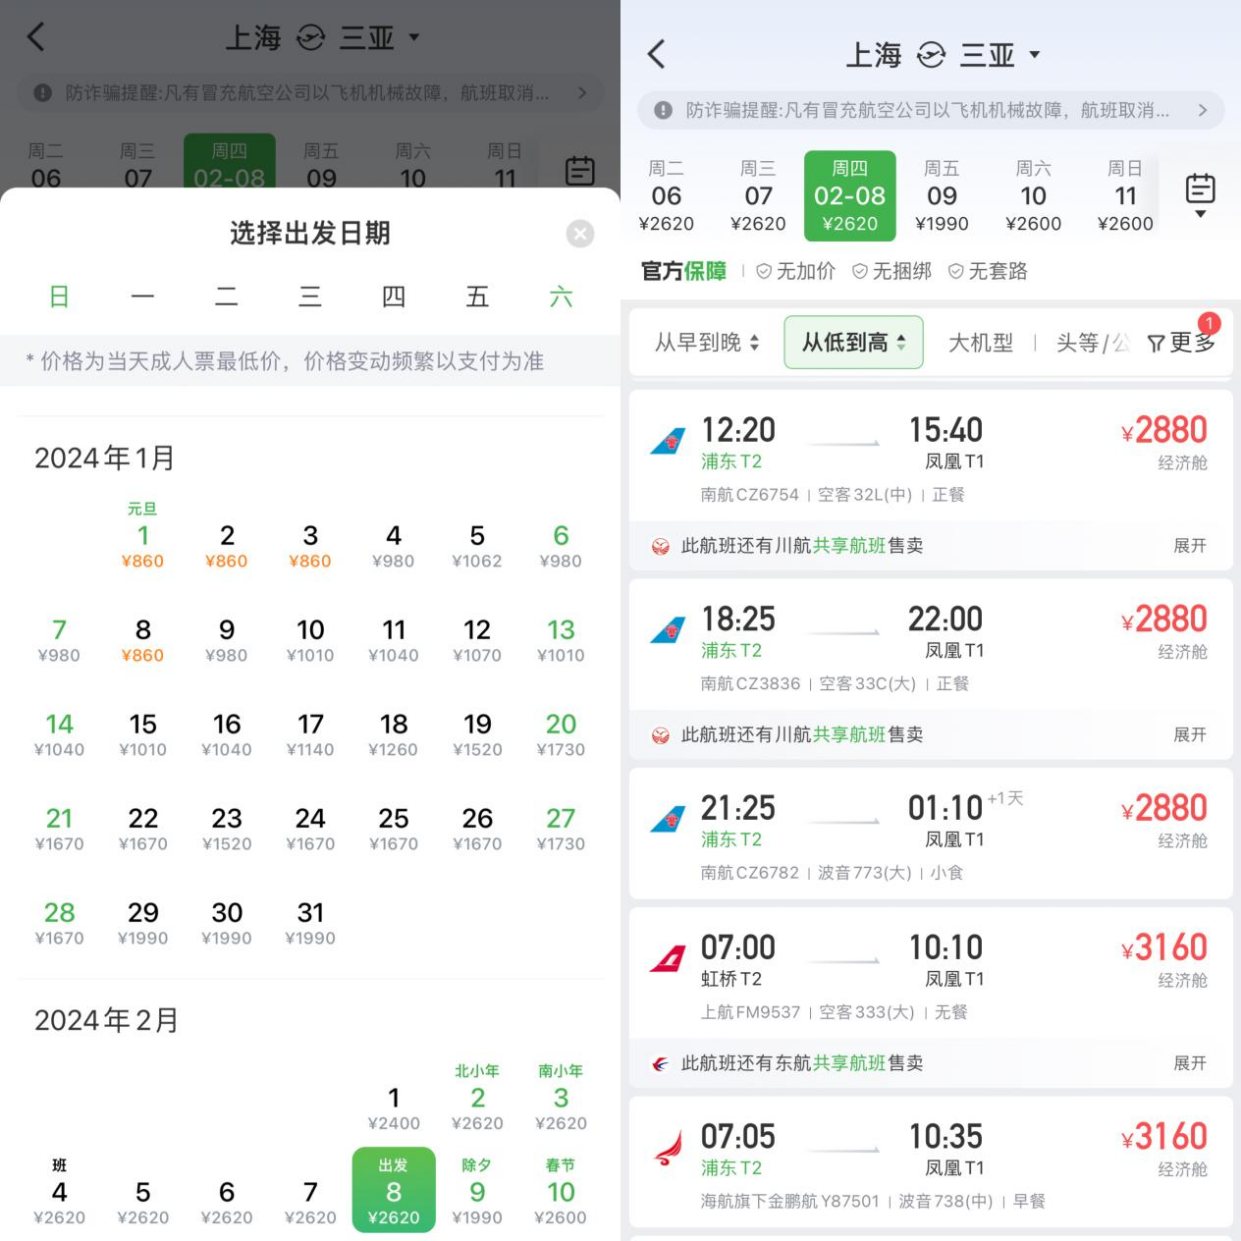 春节国内机票预订量涨2.5倍 多地景区免票